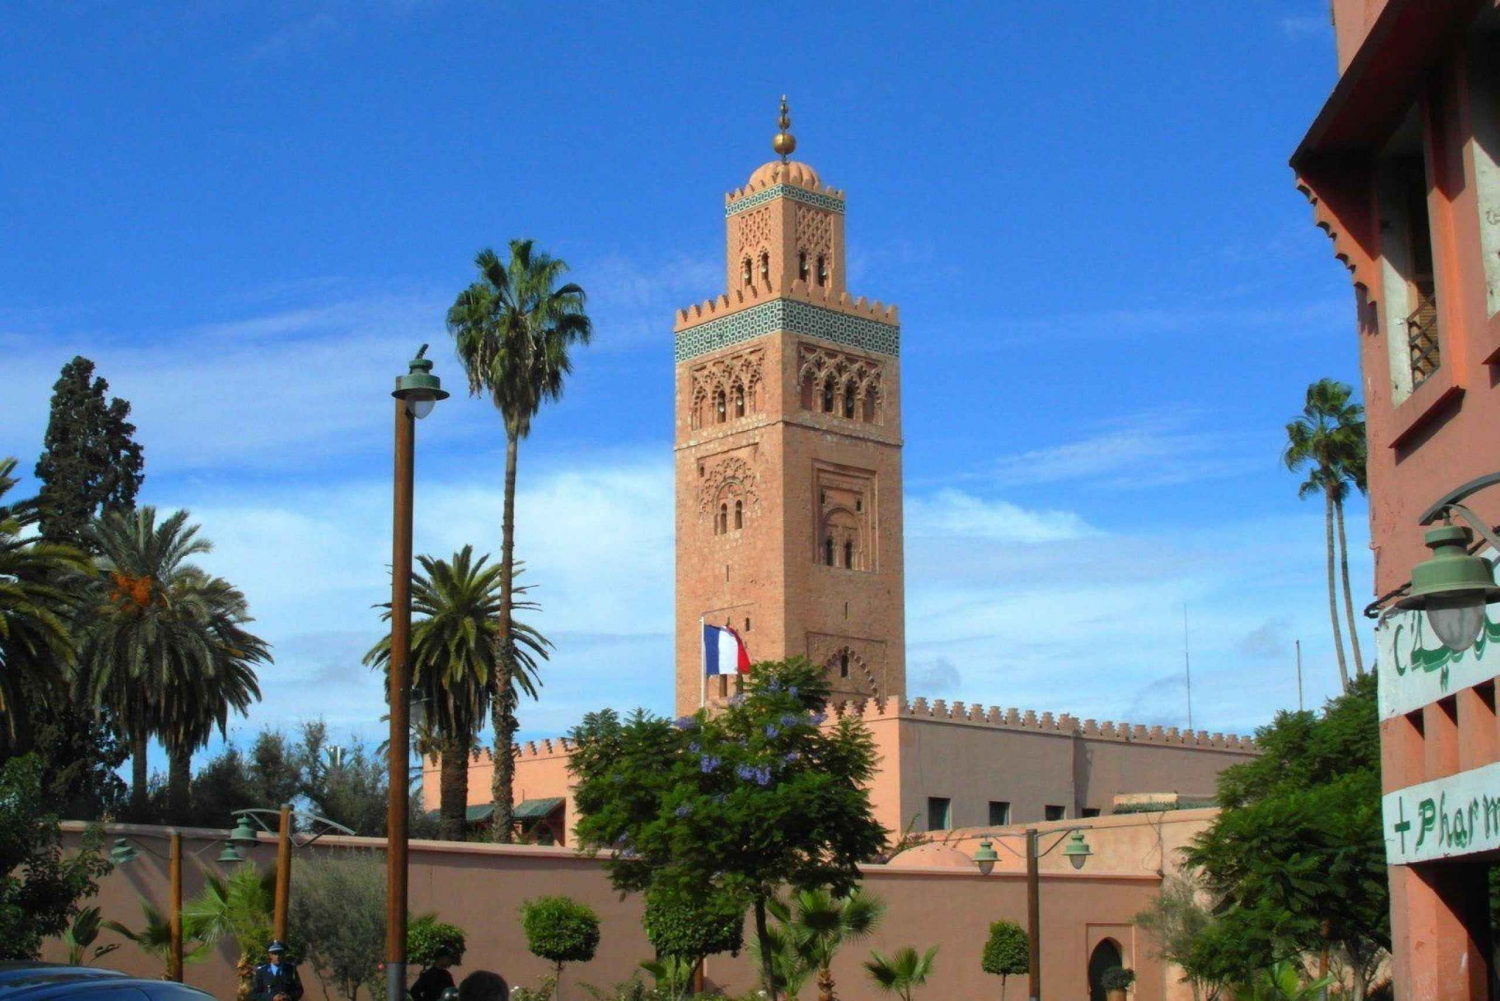 Excursão de meio dia pela cidade de Marrakech com guia local